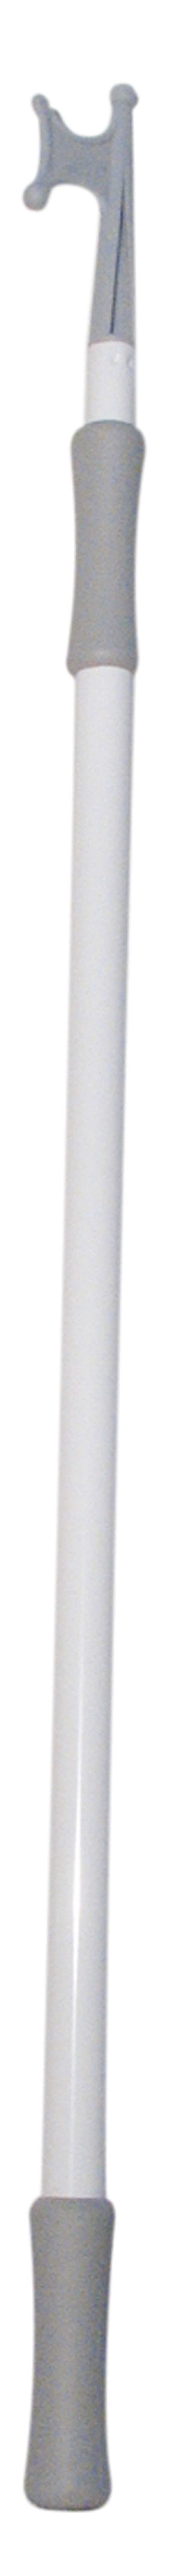 Gaffe télescopique alu blanche Longueur 1,20 à 2m Diamètre 25 / 30mm